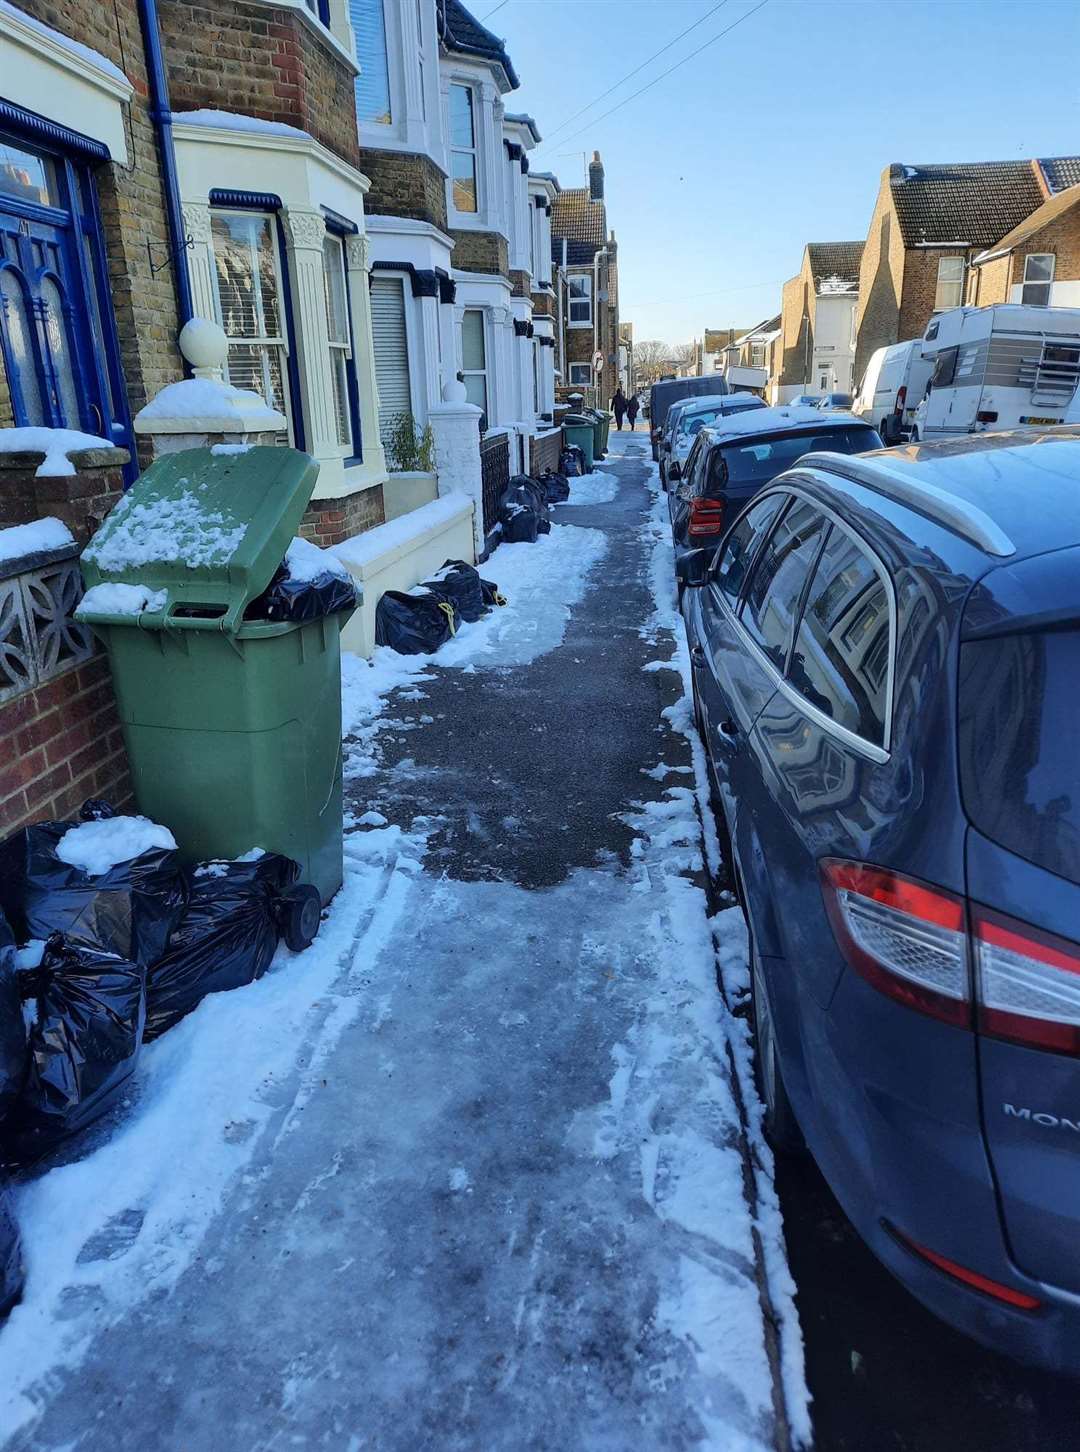 Sheerness Town Council chairman Matt Brown picked up rock salt from Faversham to salt dangerous backstreets